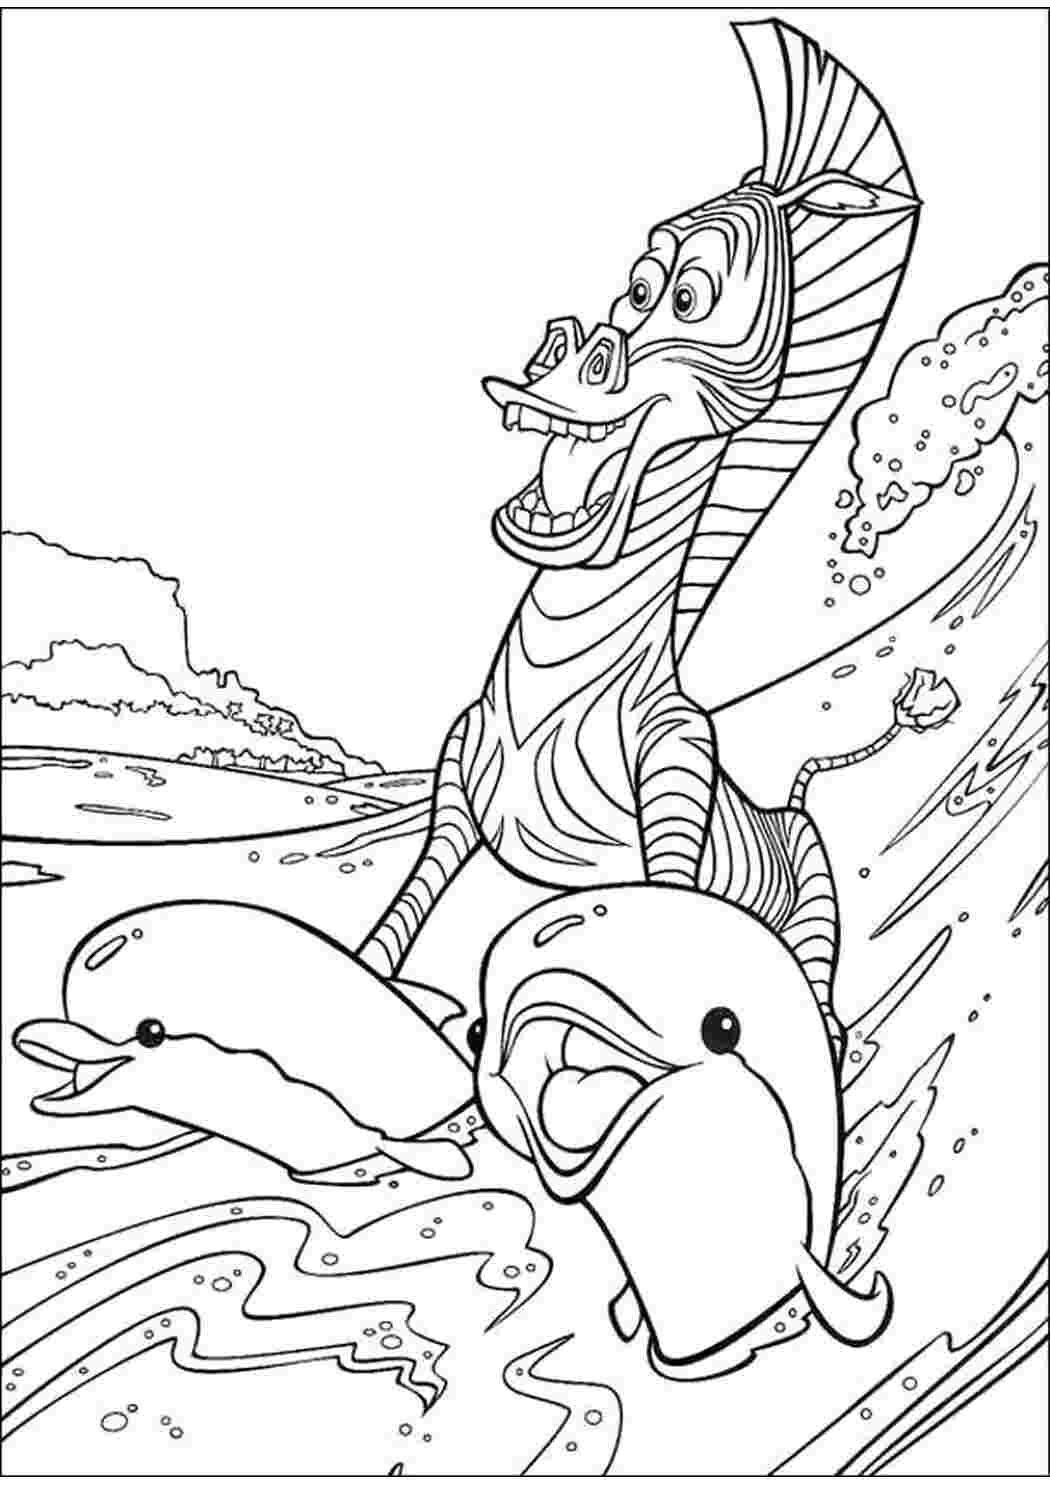 Раскраски Мультфильм Мадагаскар, зебра, дельфины, Зебра Марти катается на дельфинах  